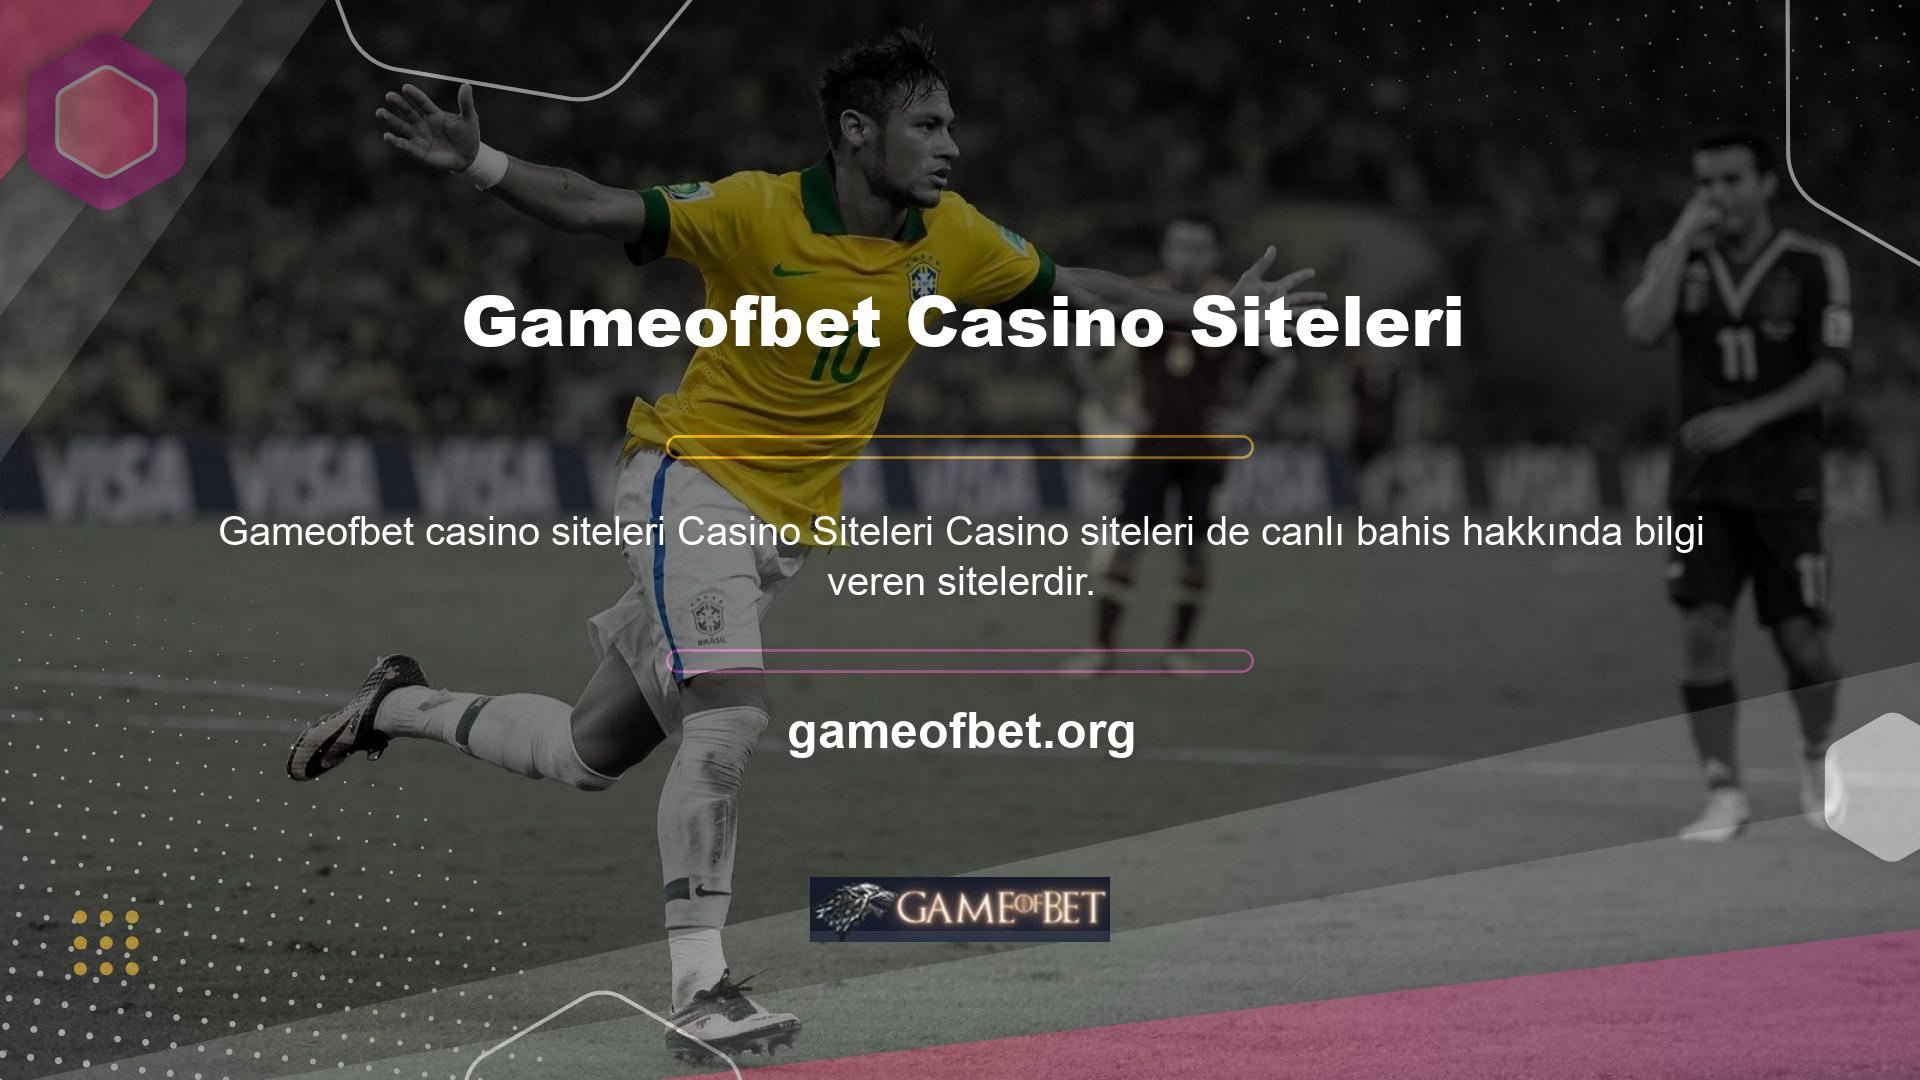 Yabancı web sitelerine bakarsanız, hem casino oyunları hem de bahis hizmetleri sunduklarını göreceksiniz